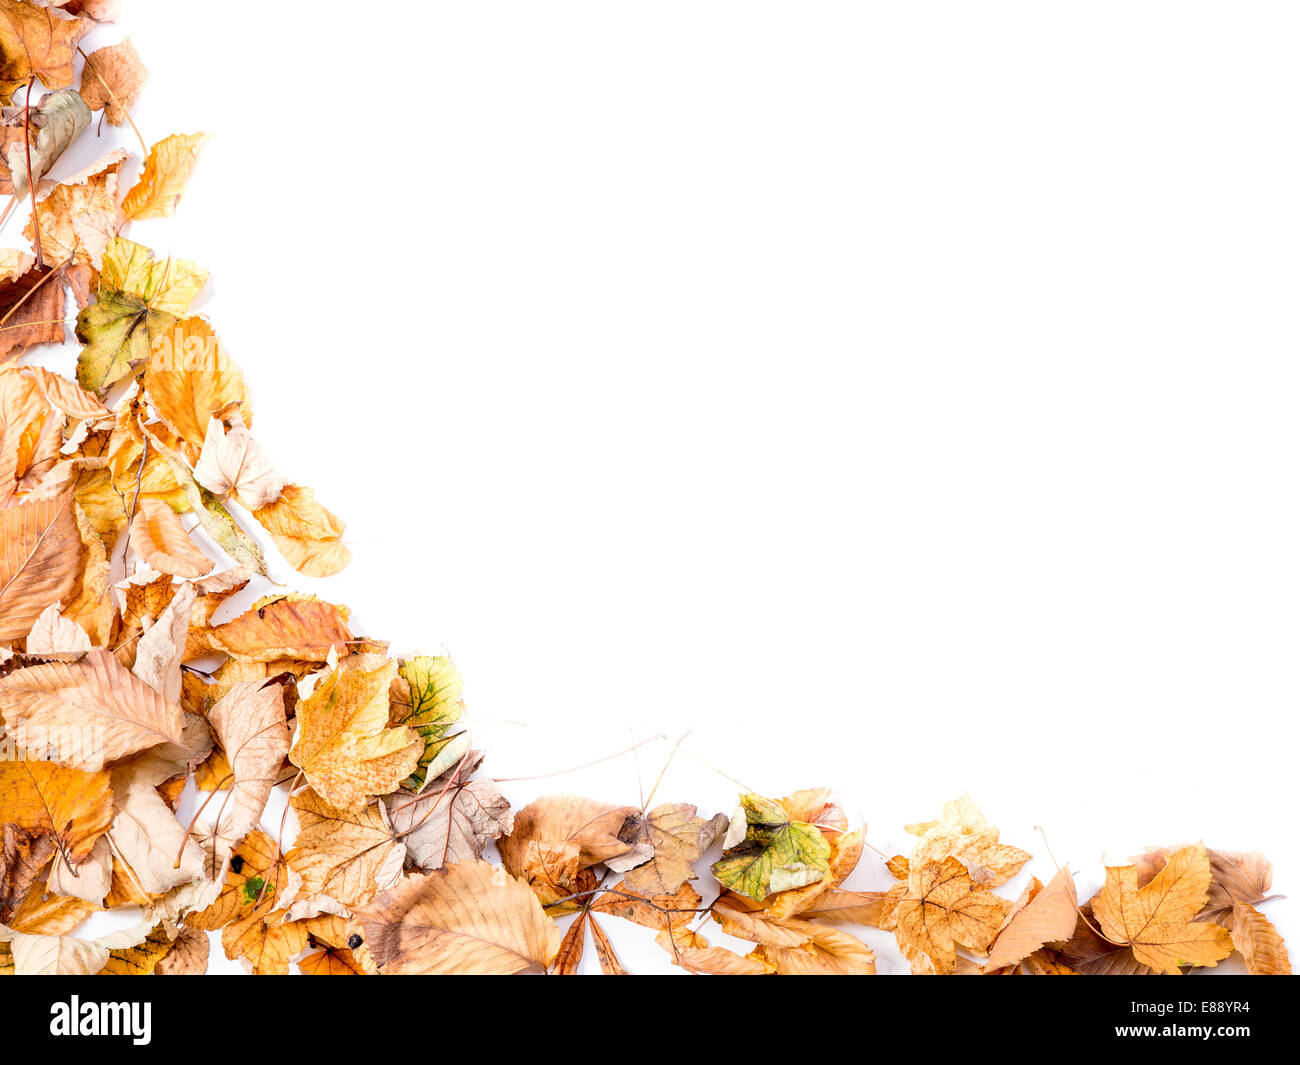 Les feuilles mortes de l'automne avec copie espace blanc Banque D'Images